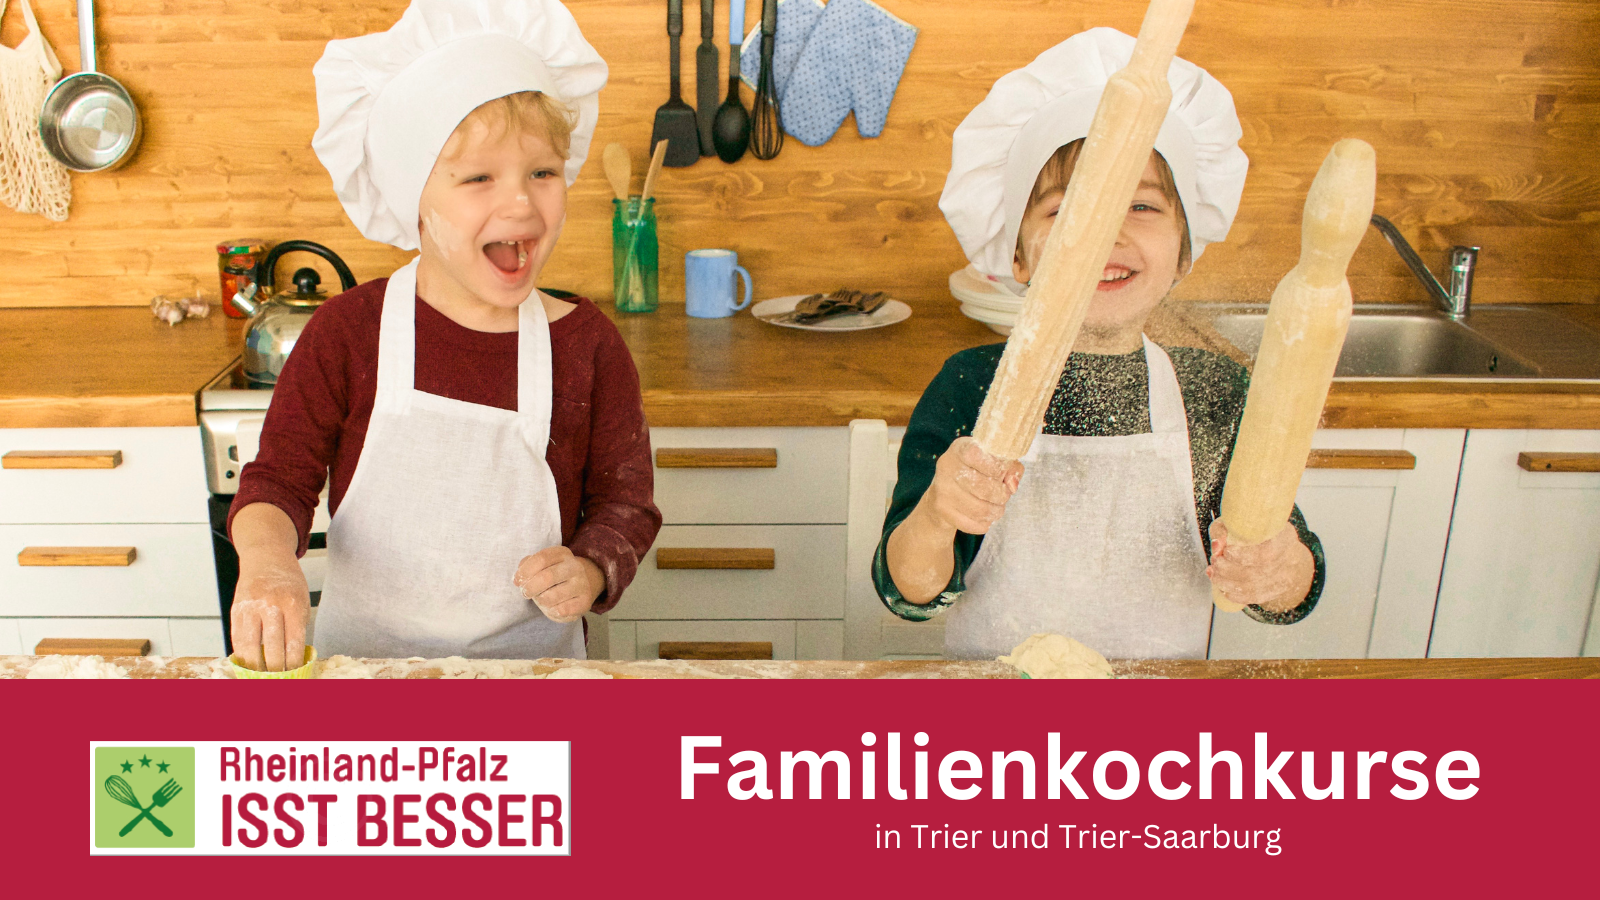 Rheinland-Pfalz isst besser - Familienkochkurse in Trier und Trier-Saarburg